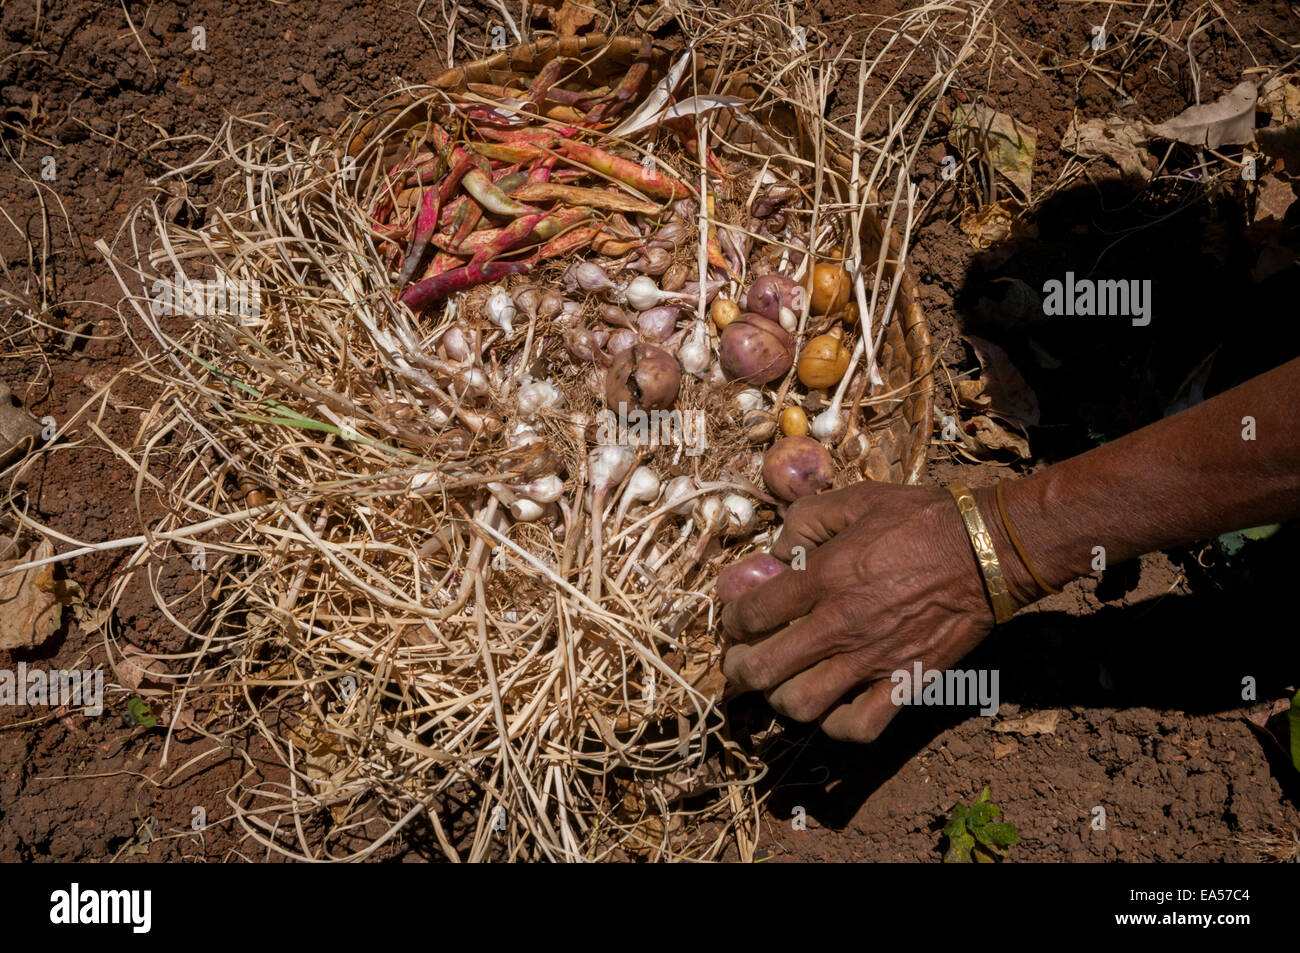 Yuliana Fuka erntet während der Trockenzeit verschiedene Ernten auf ihrem Ackerland im Dorf Fatumnasi, Süd-Zentral-Timor, Ost-Nusa Tenggara, Indonesien. Stockfoto